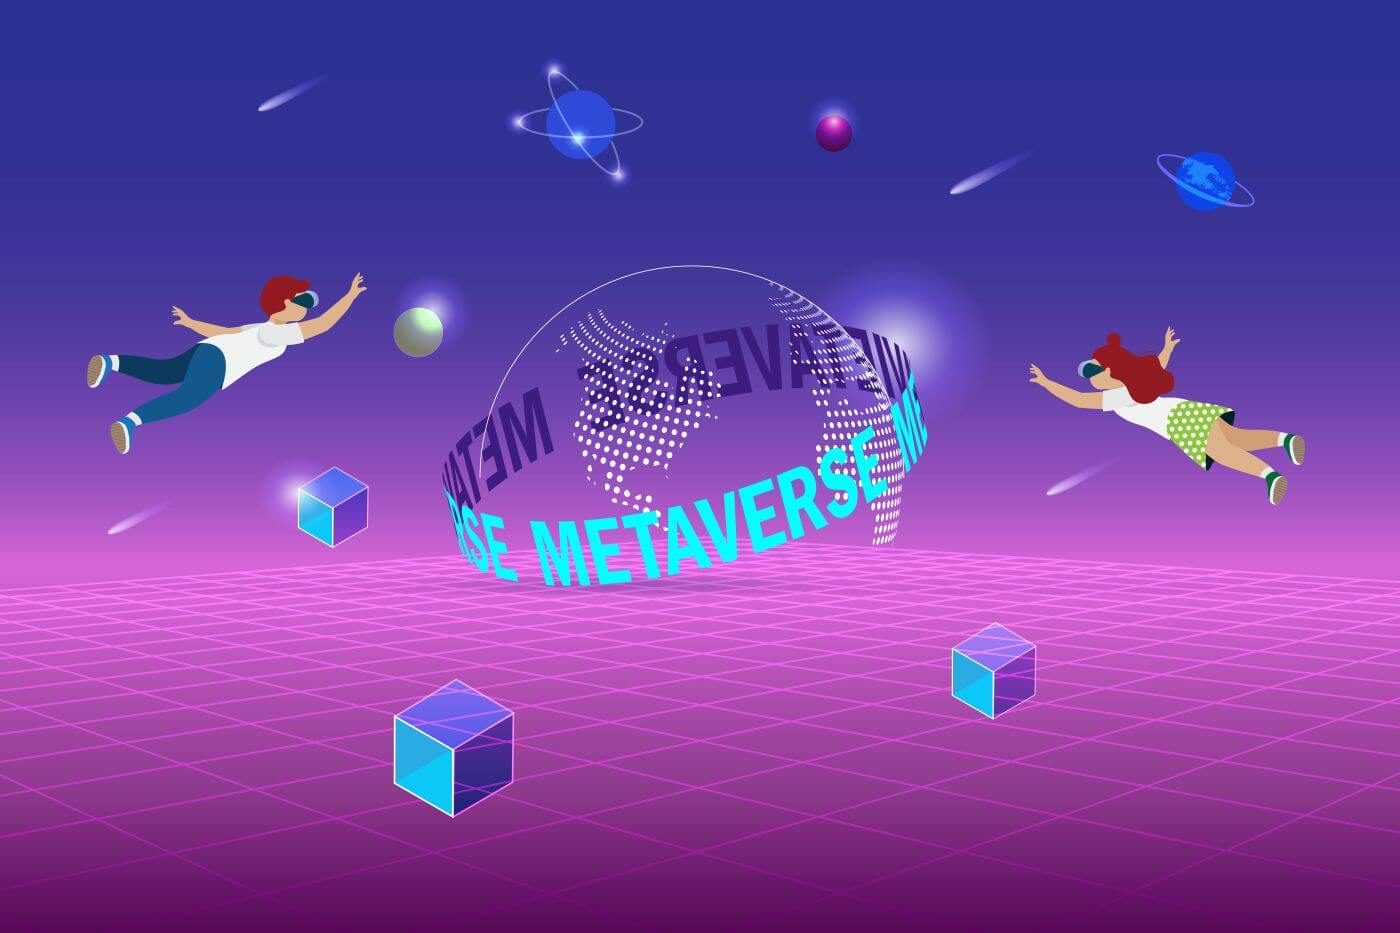 图片展示了两个卡通人物在紫色渐变背景的虚拟空间中飘浮，周围有多彩几何体，前方有“METAVERS”字样的半球形结构。